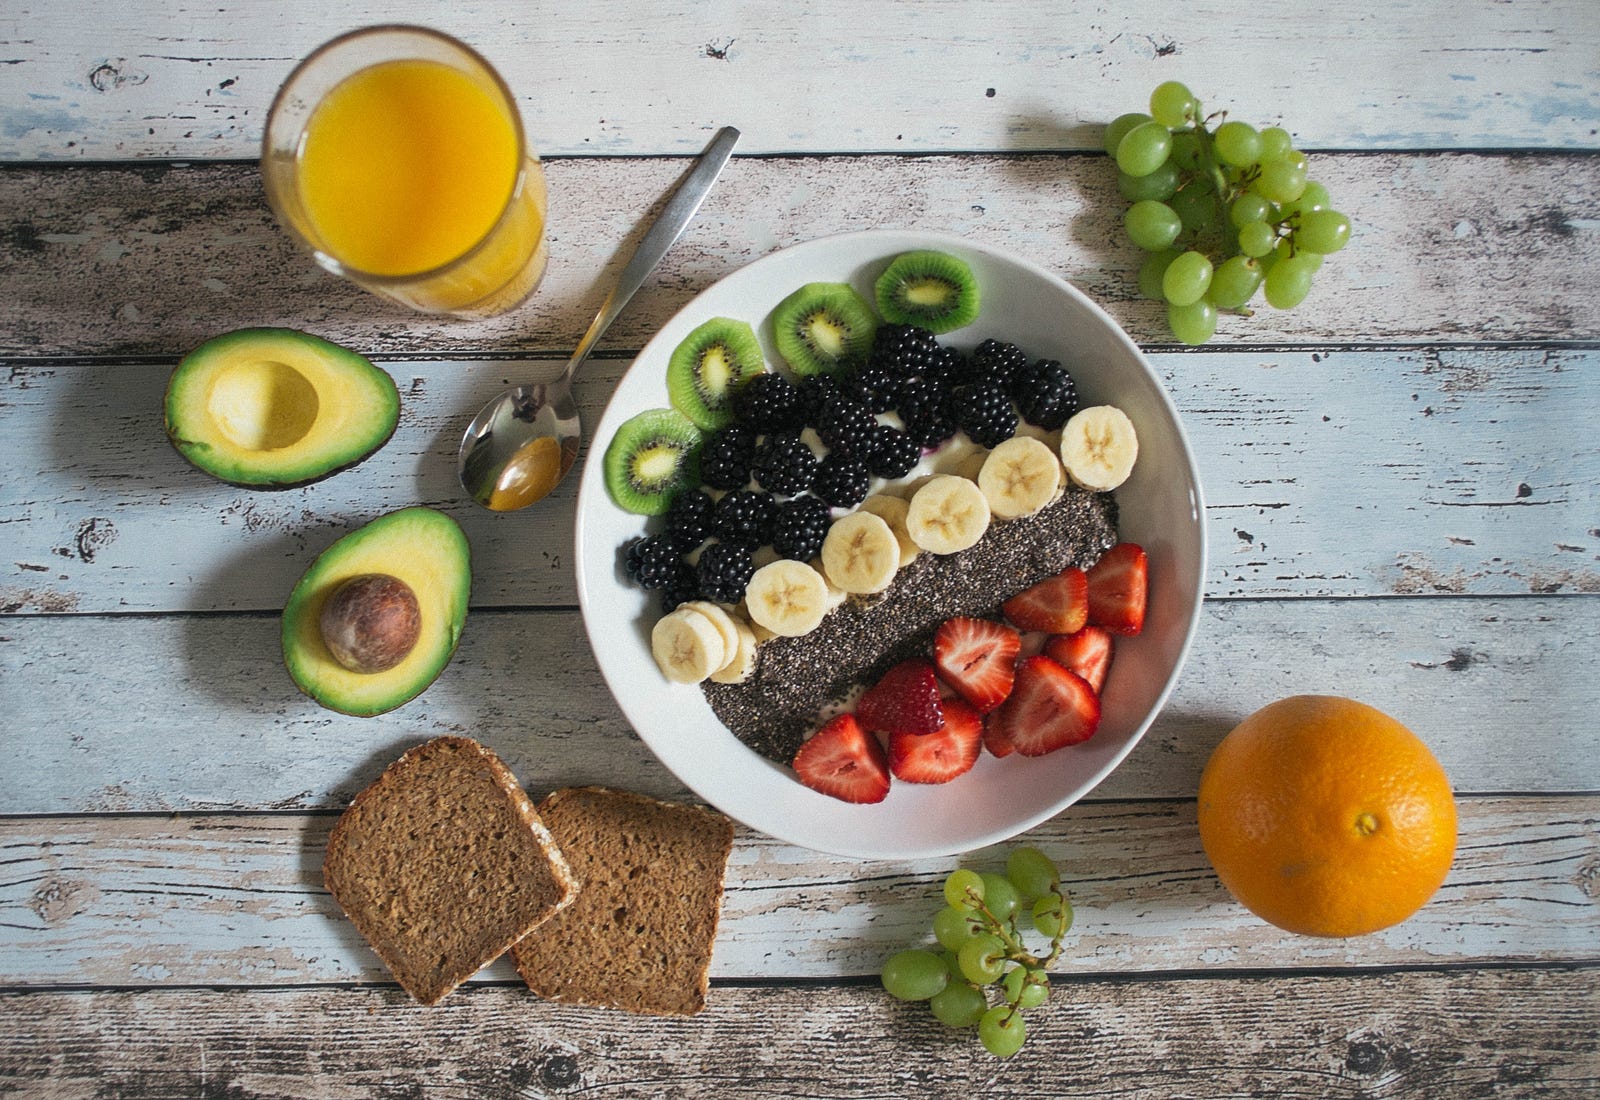 Una mesa con un frutero, jugo y otros alimentos saludables.